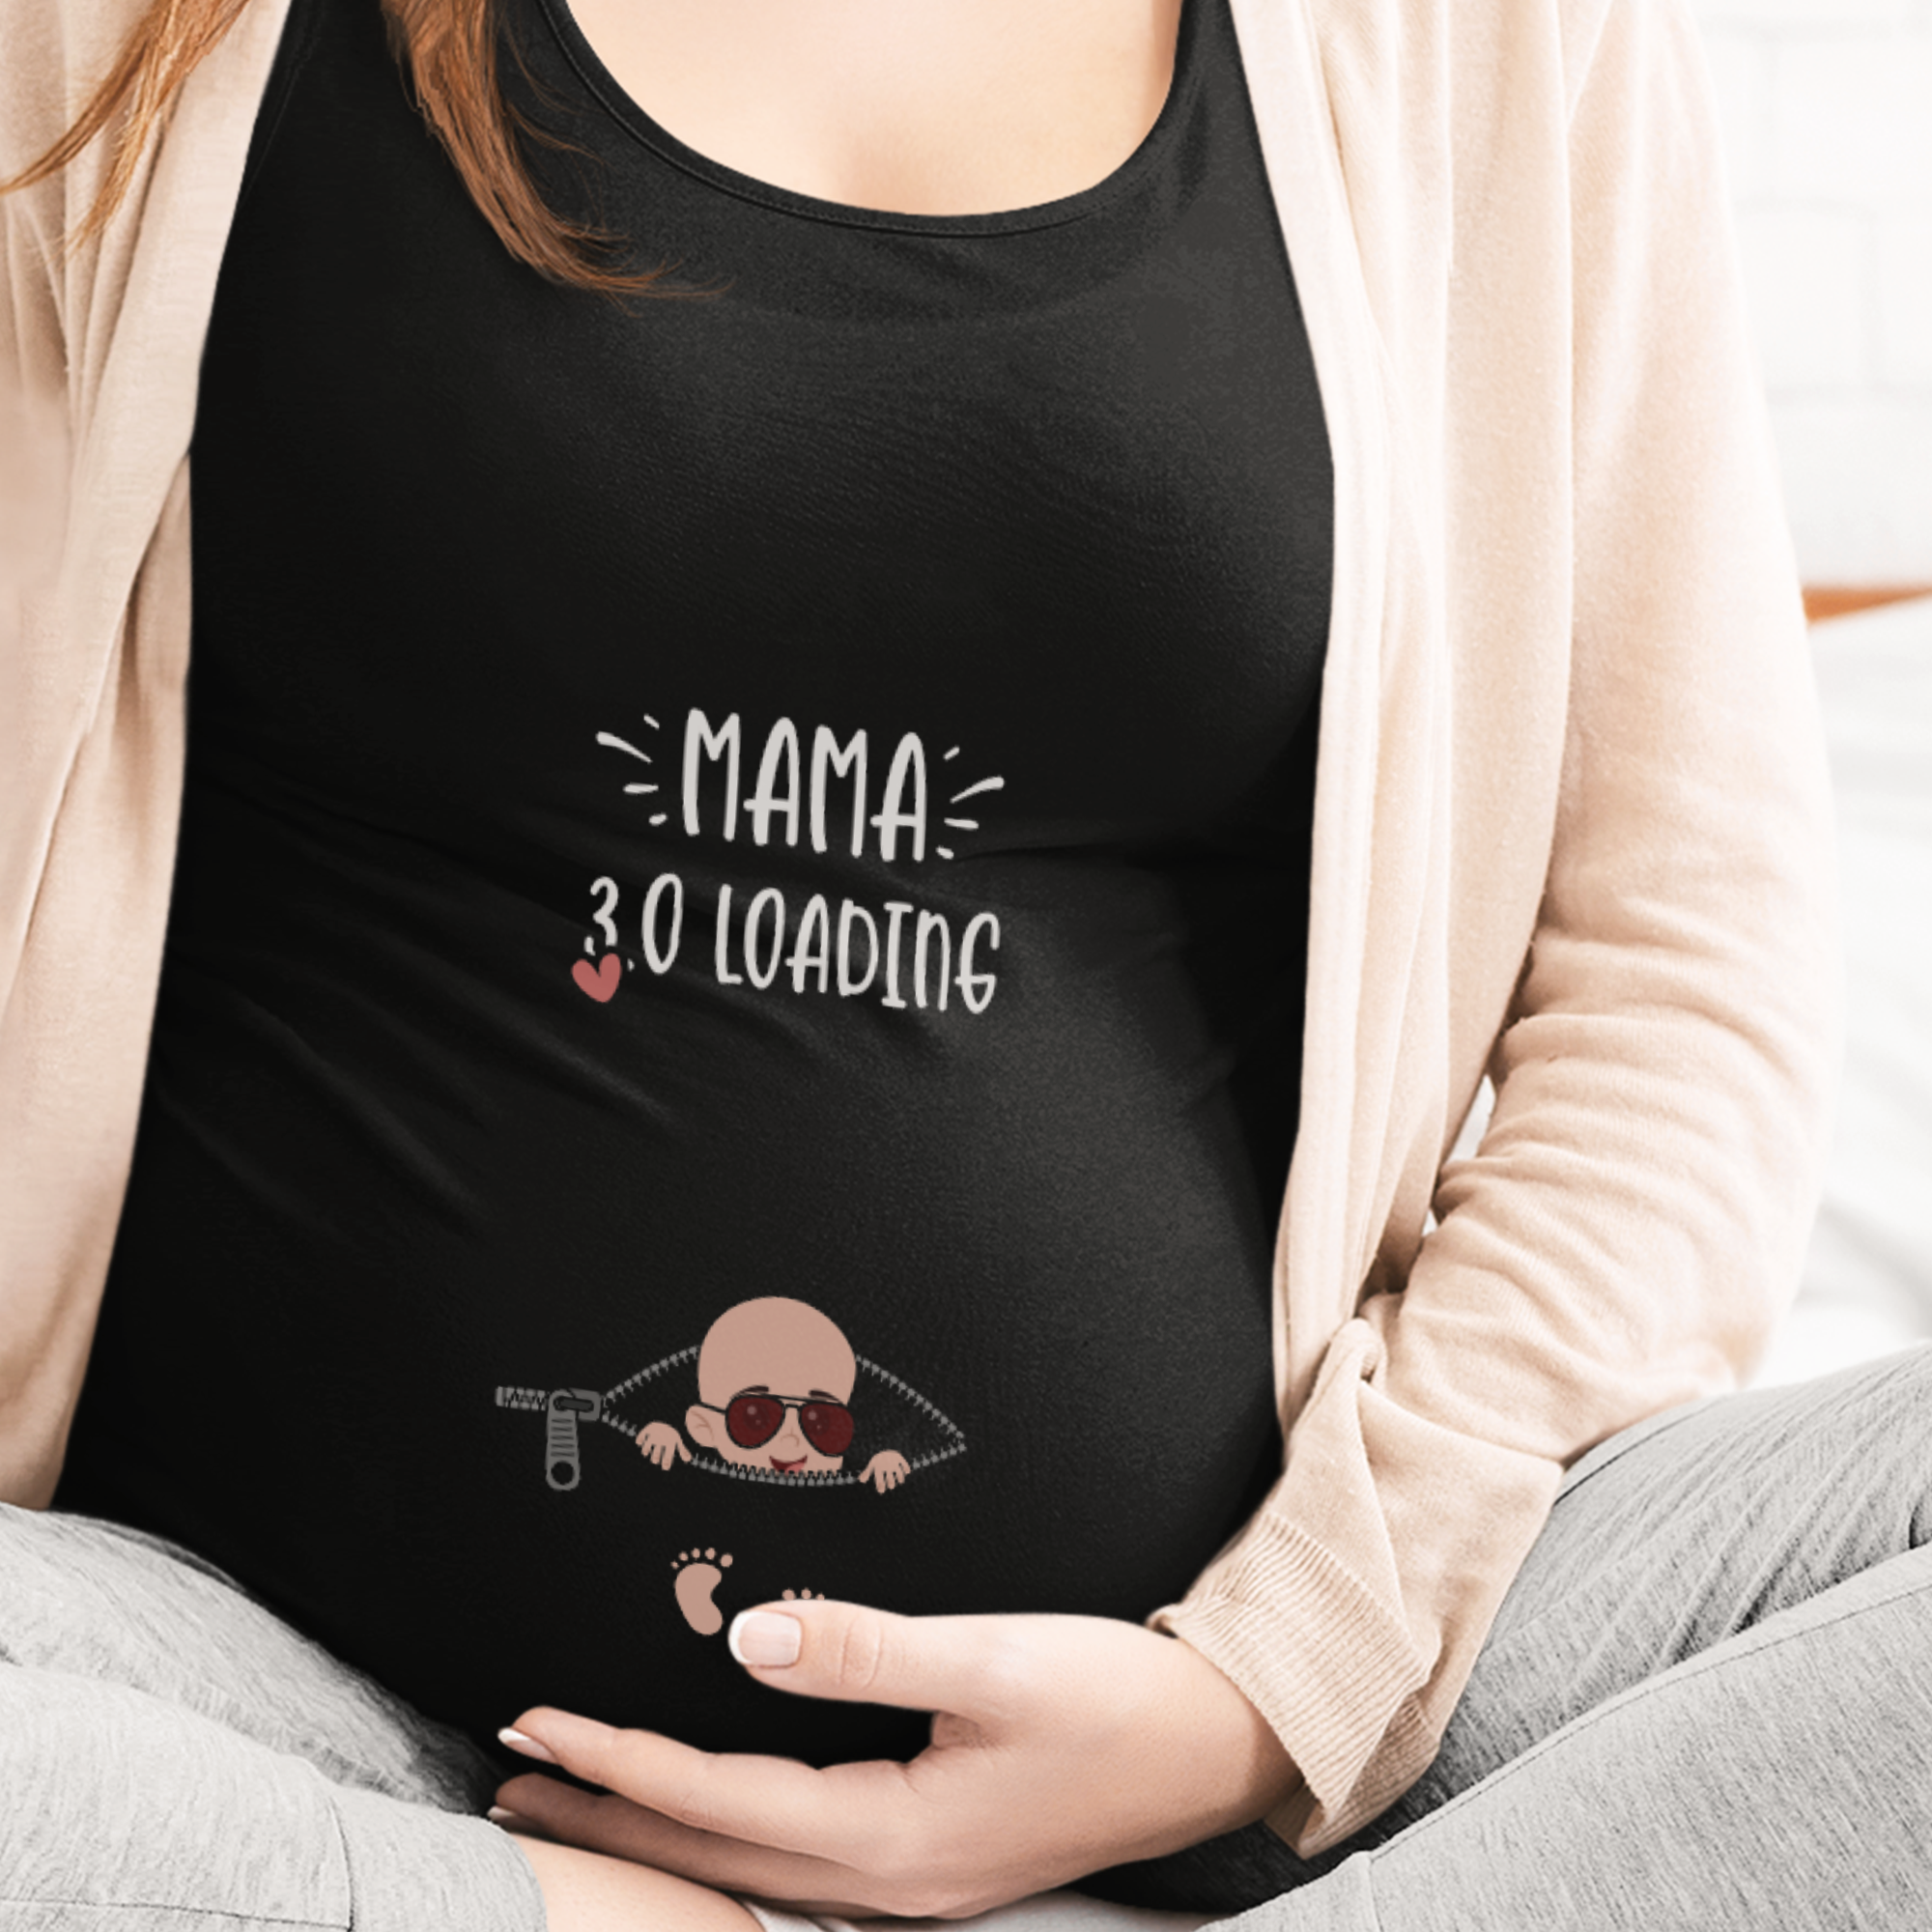 Mama 3.0 Loading Schwangerschafts T-Shirt - DESIGNSBYJNK5.COM